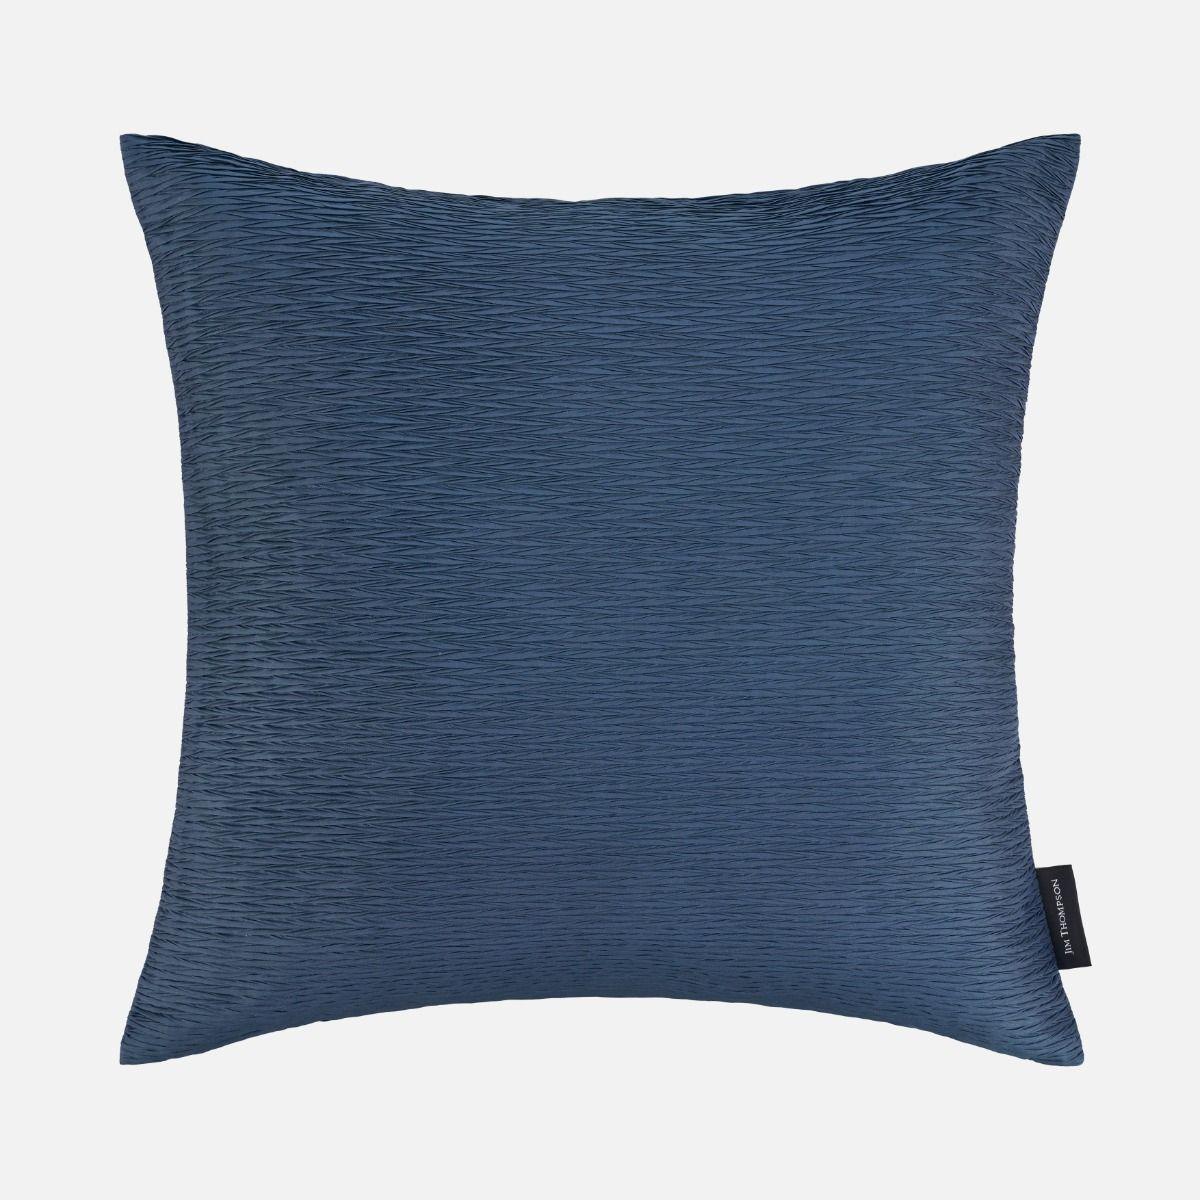 Silk Cushion Cover 18" - Navy Blue